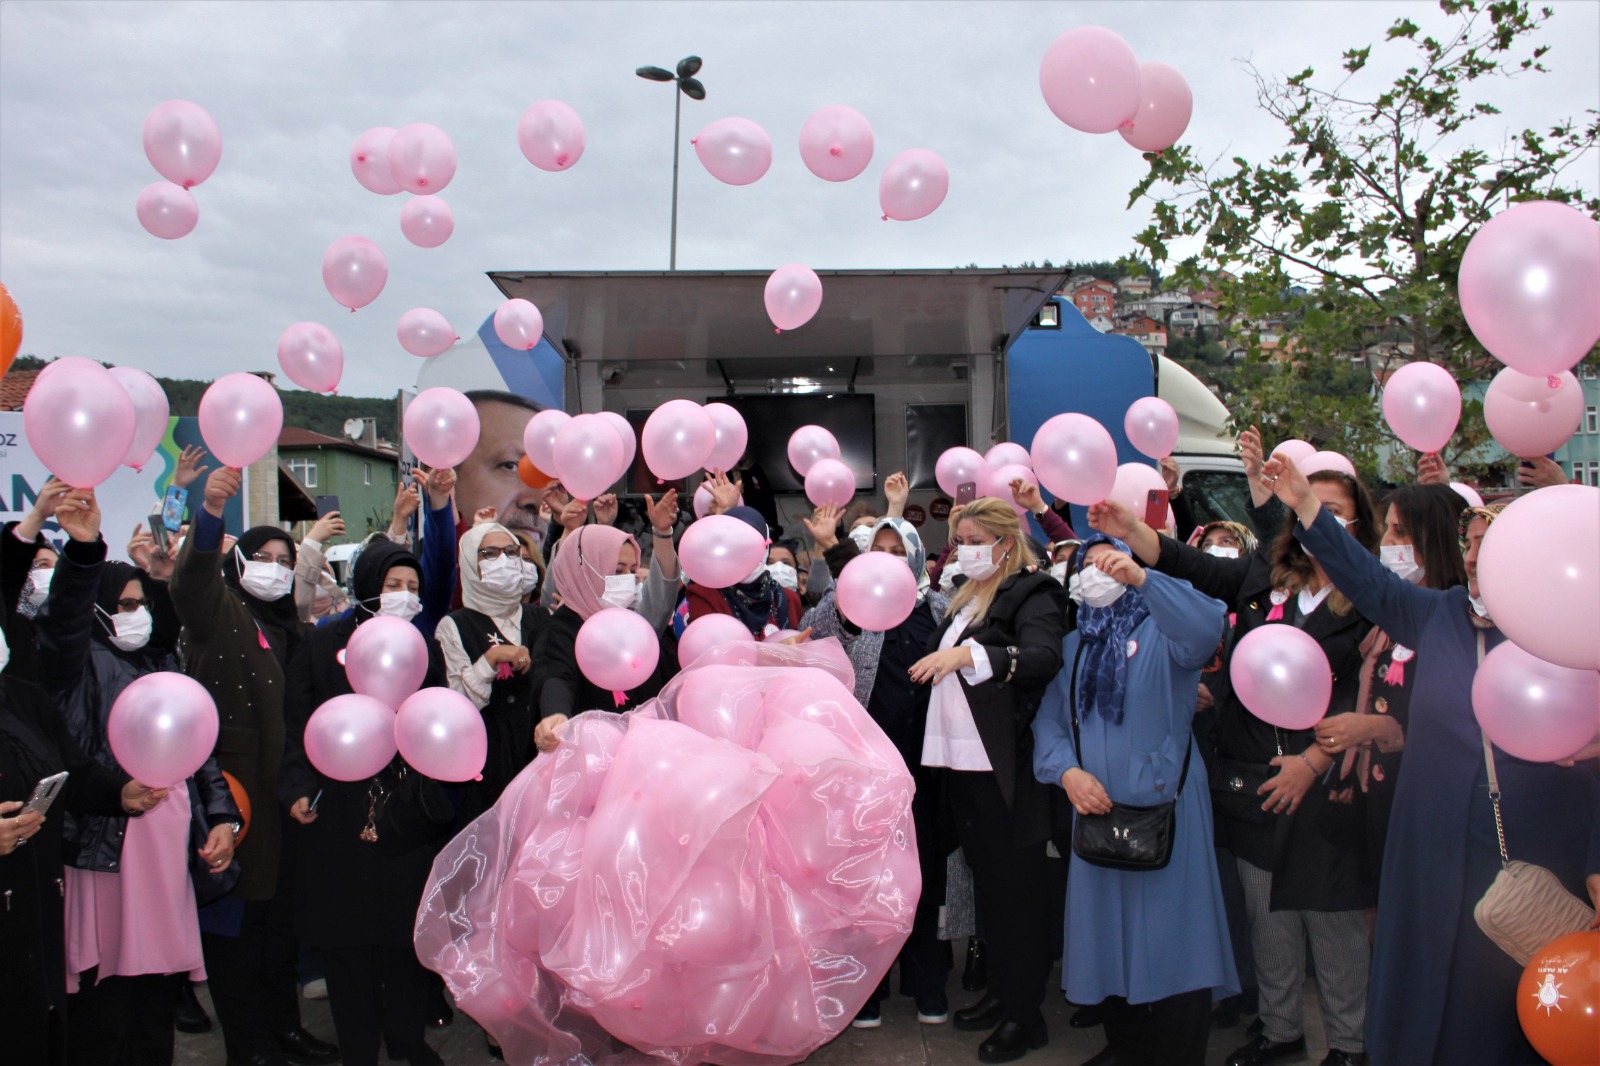 Pembe Balonlar Meme Kanserine Farkındalık İçin Uçuruldu